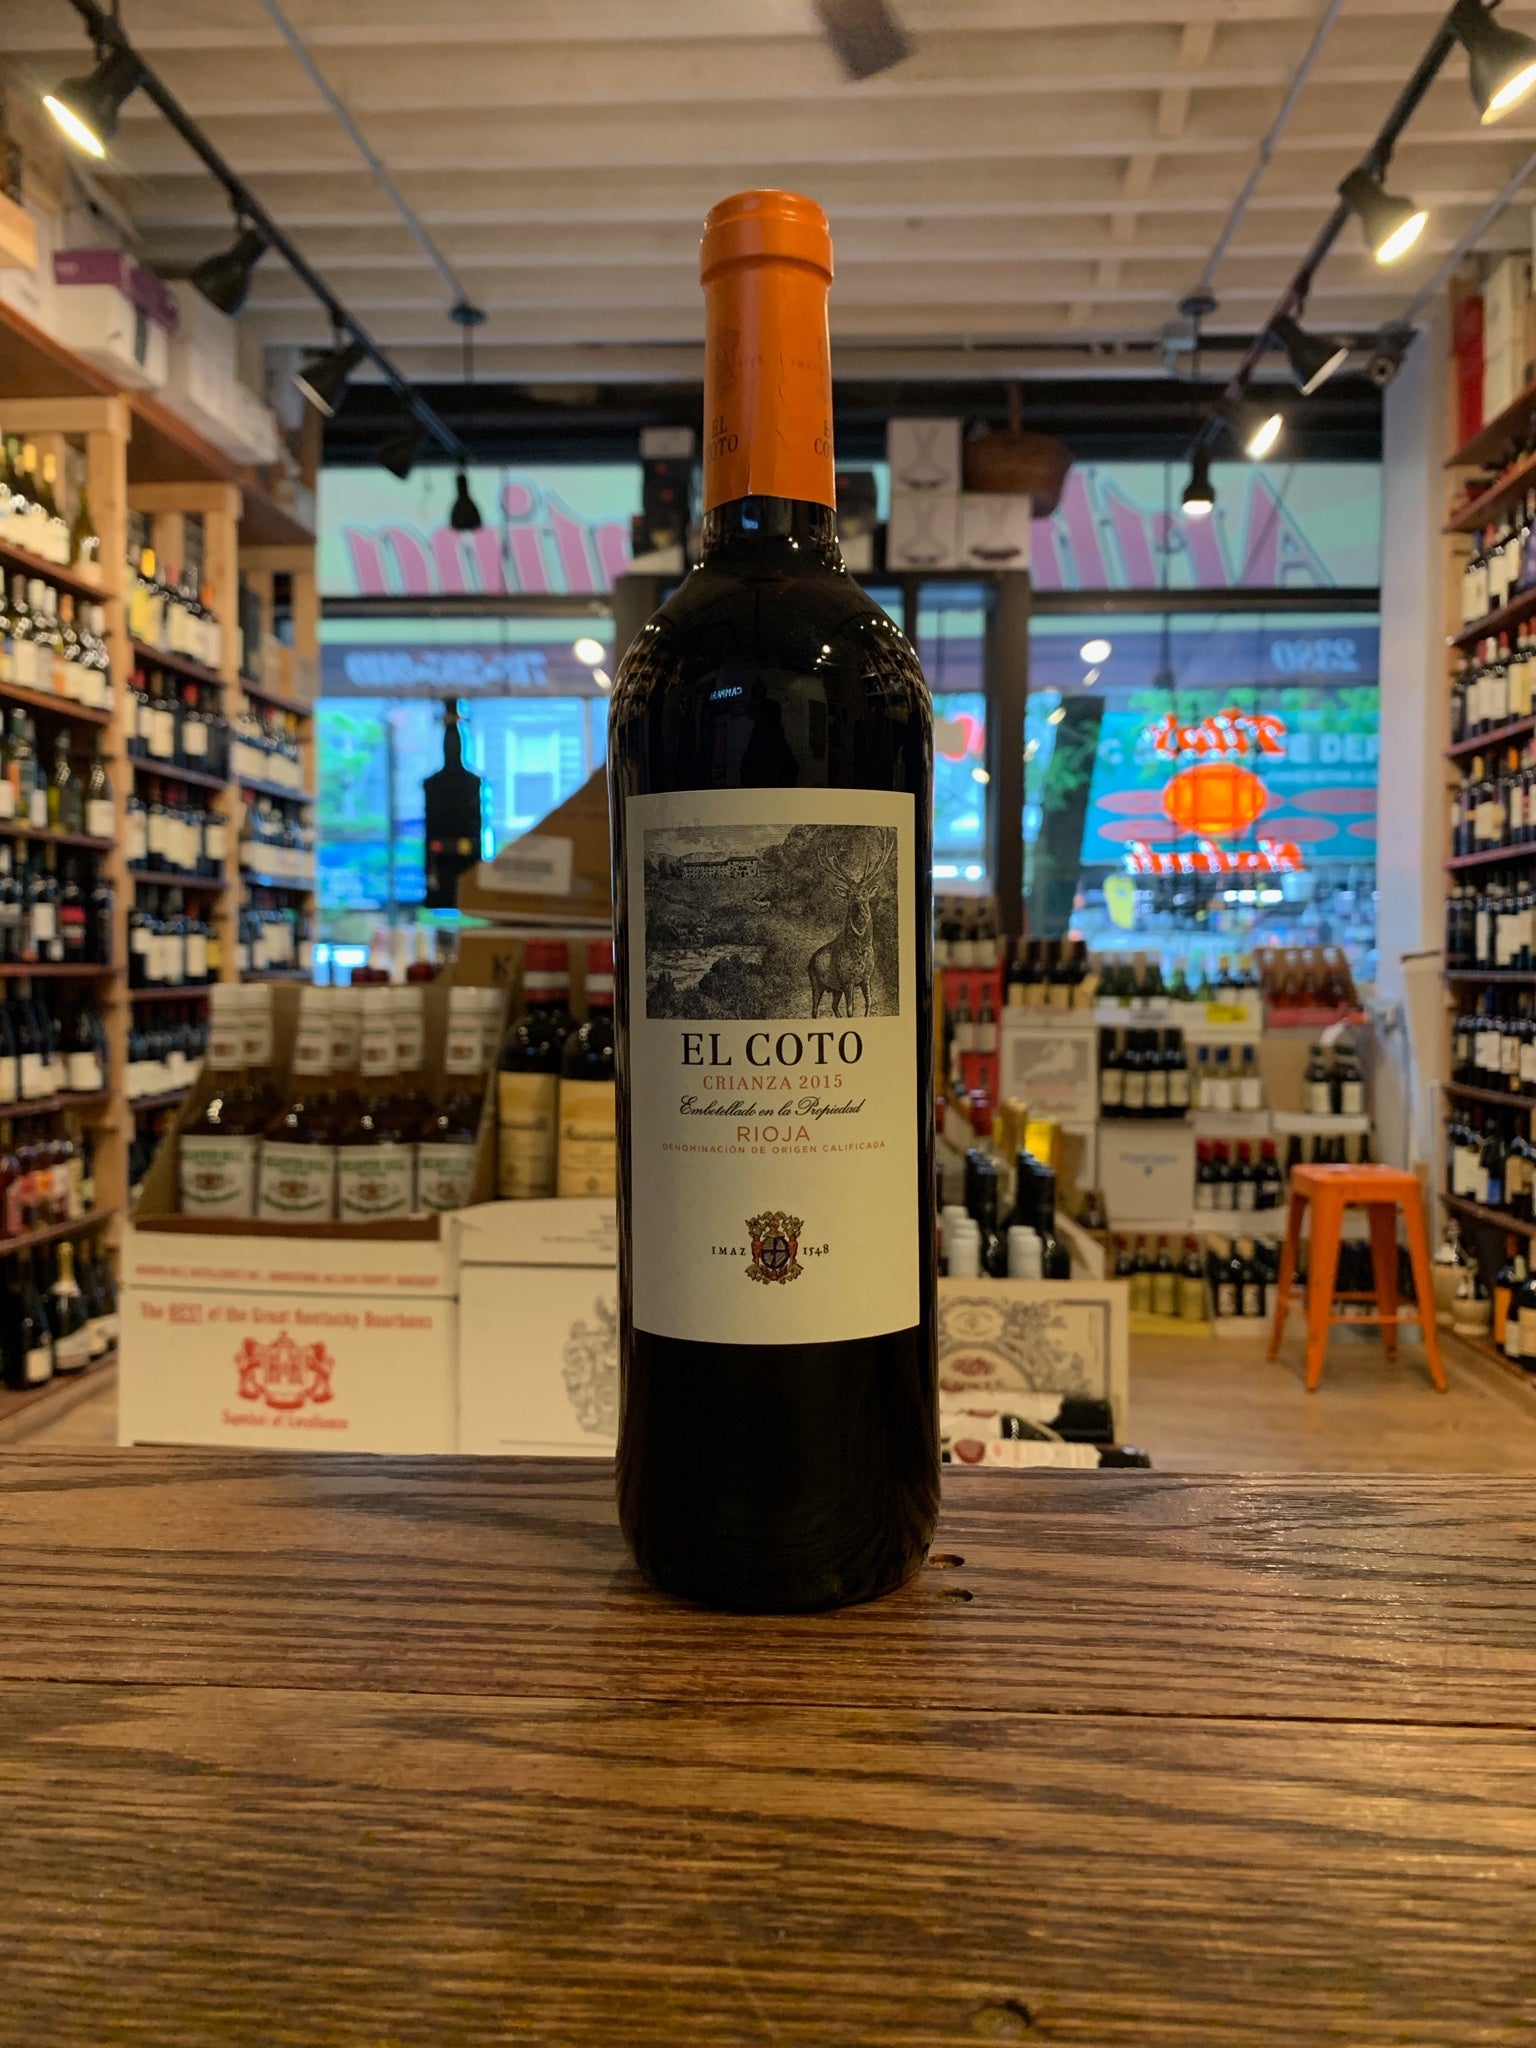 El Coto Crianza Rioja 750ml a dark wine bottle with a white label and orange top